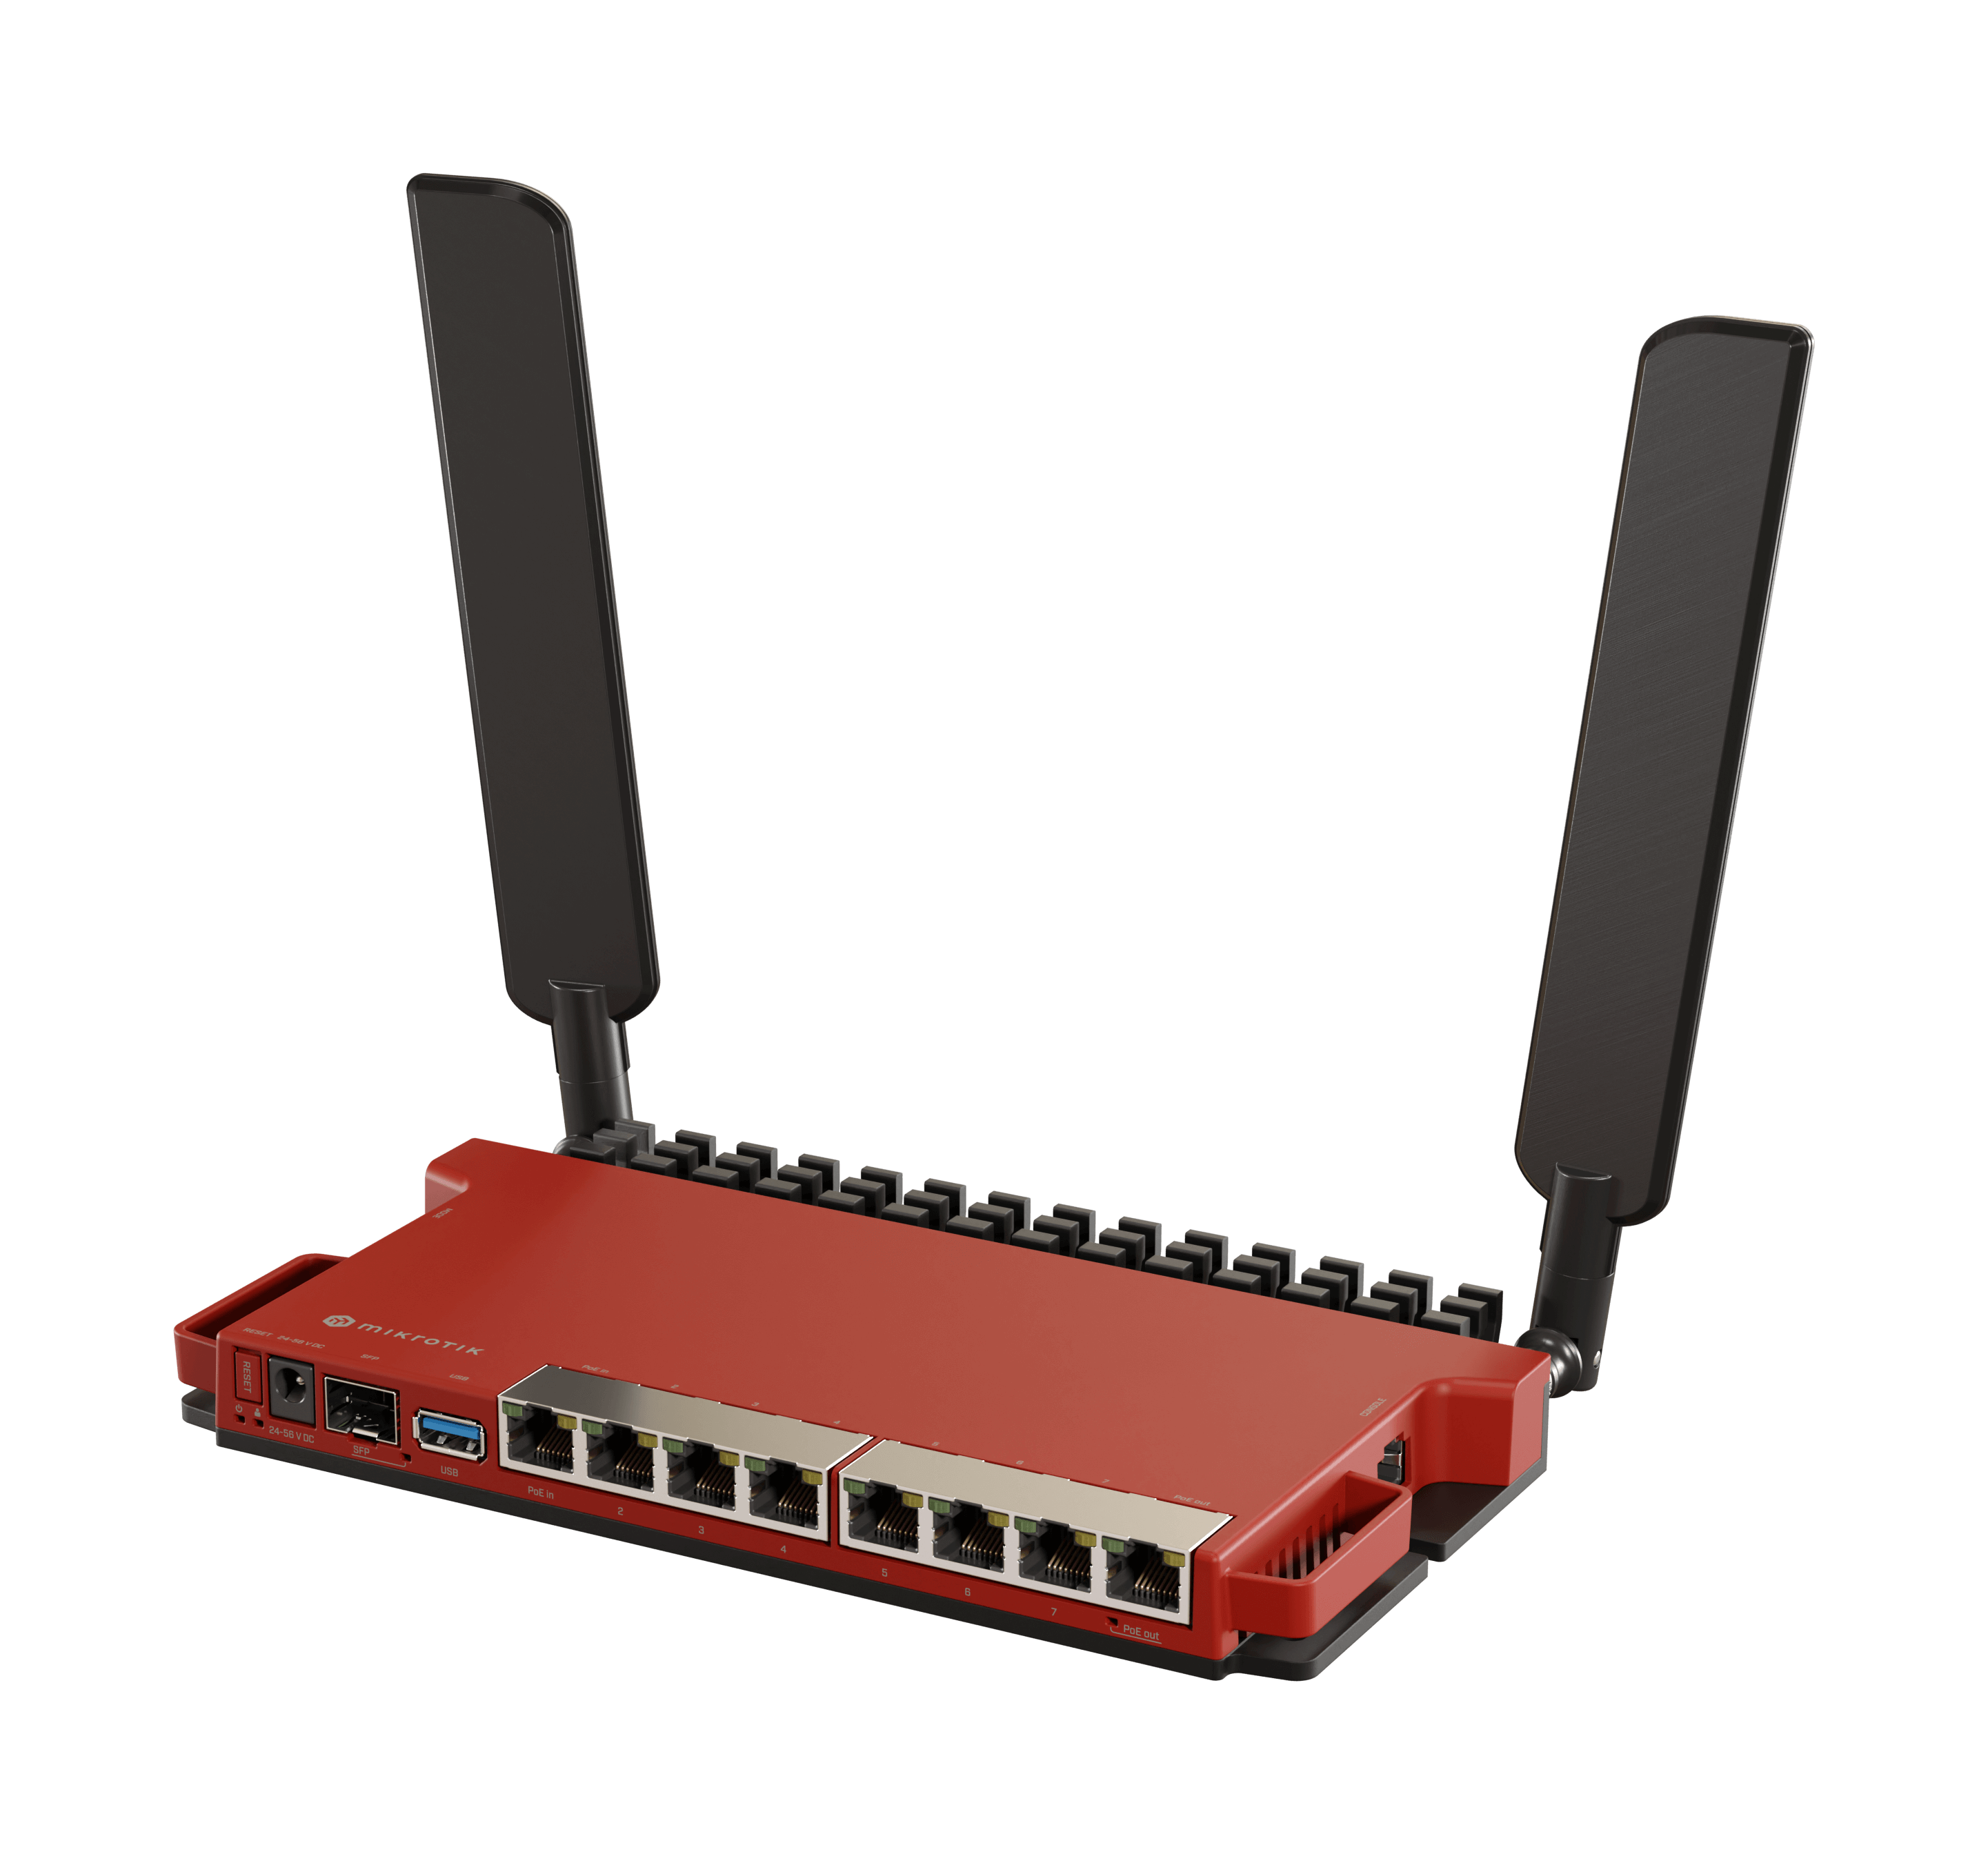   Routeurs  pro   Routeur 8xRJ45 Gbit +2,5Gbits SFP  Wfi ax RBL009AX L009UIGS-2HAXD-IN